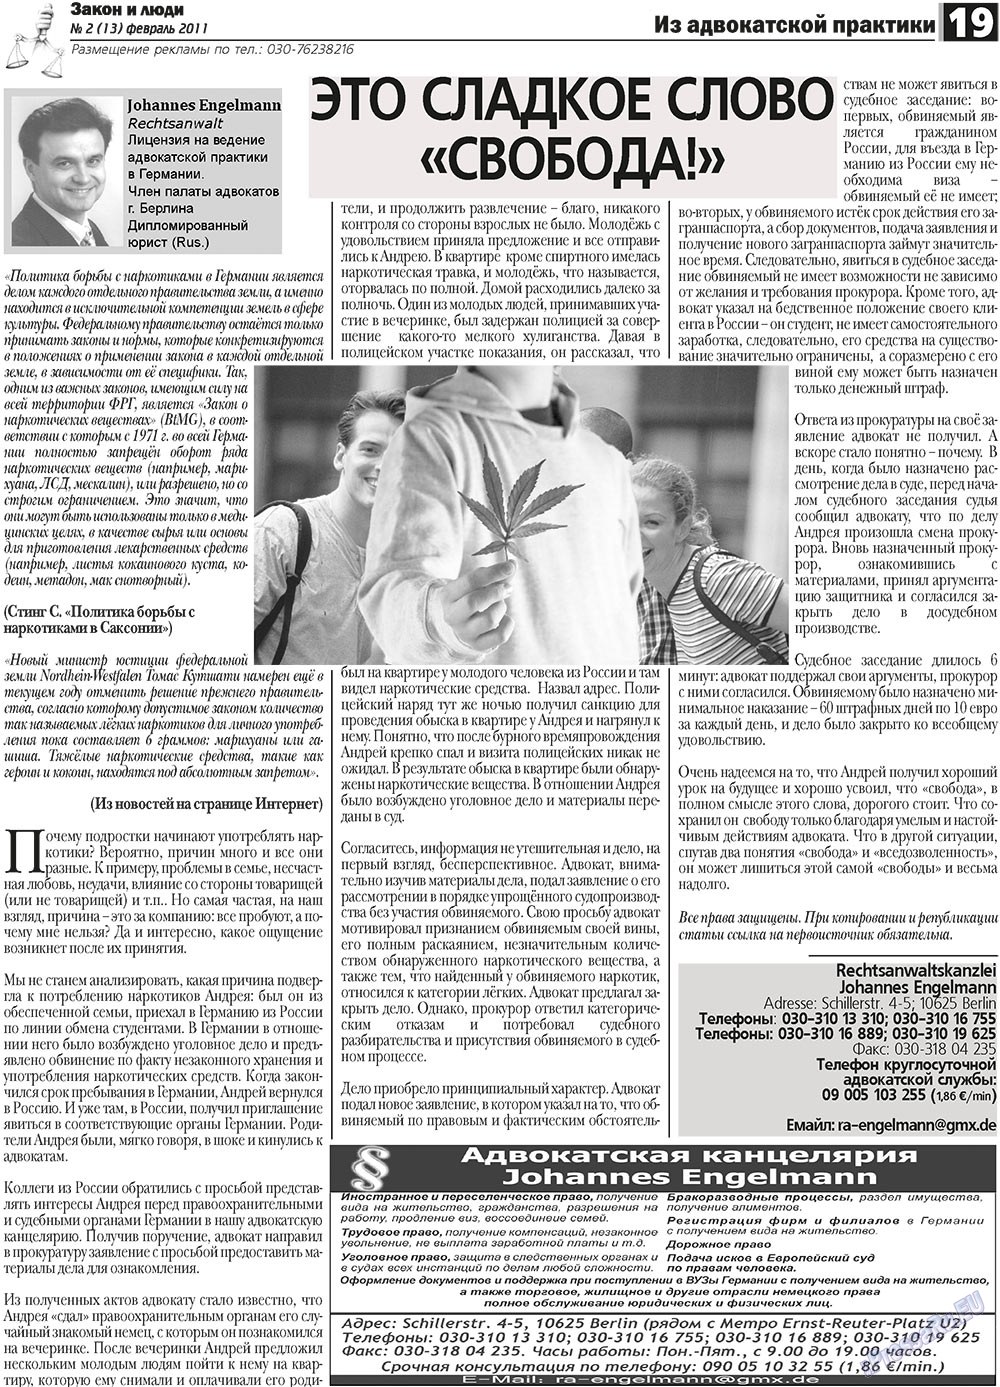 Закон и люди (газета). 2011 год, номер 2, стр. 19